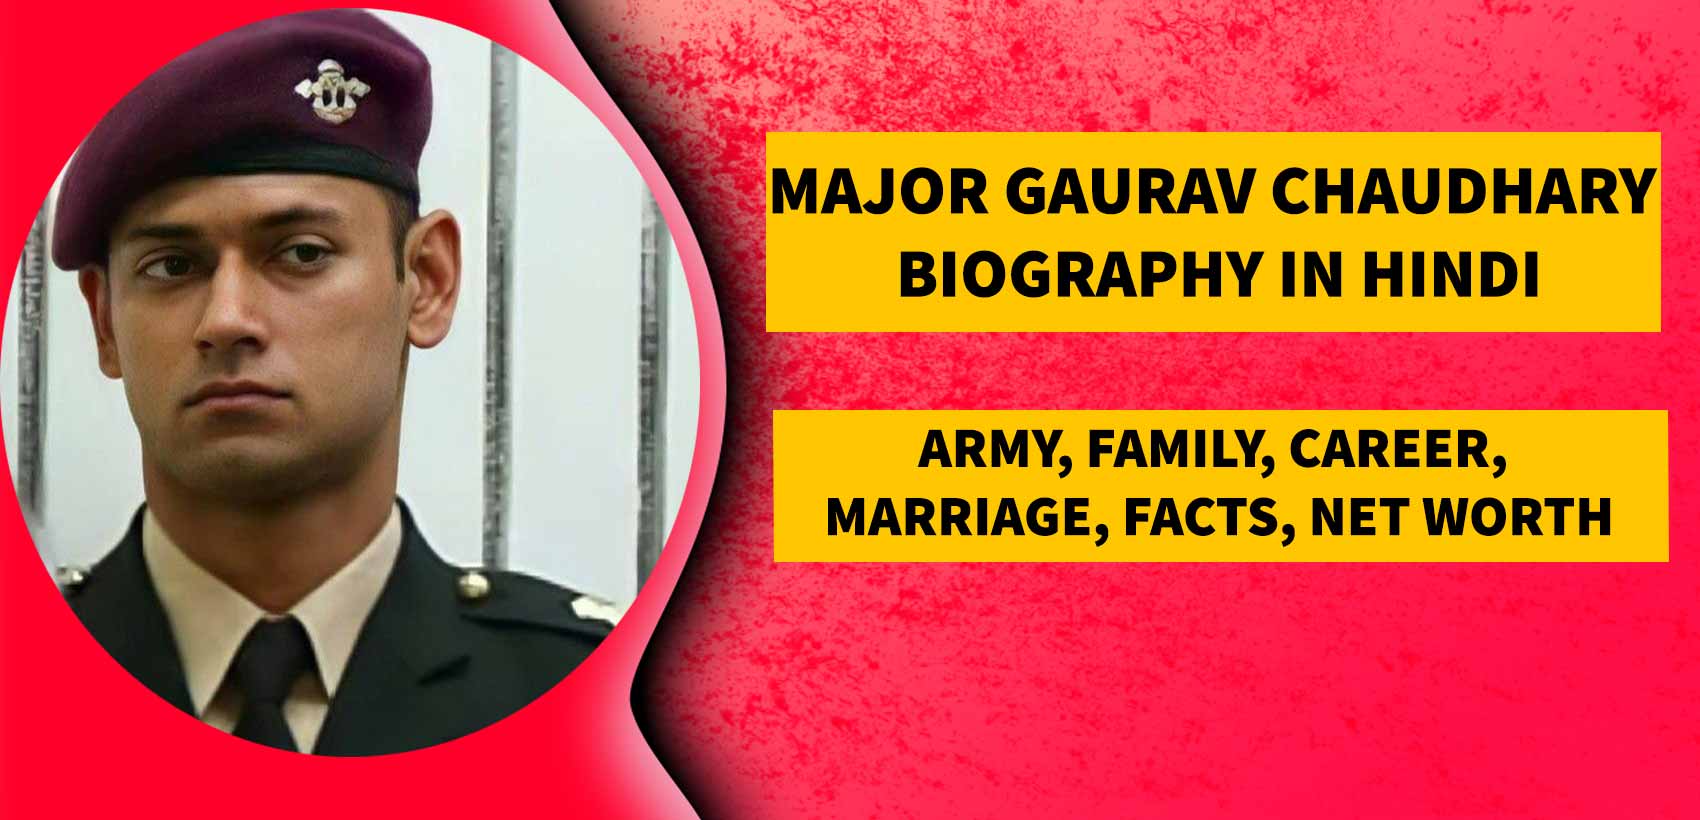 मेजर गौरव चौधरी का जीवन परिचय | Major Gaurav Chaudhary Biography in Hindi